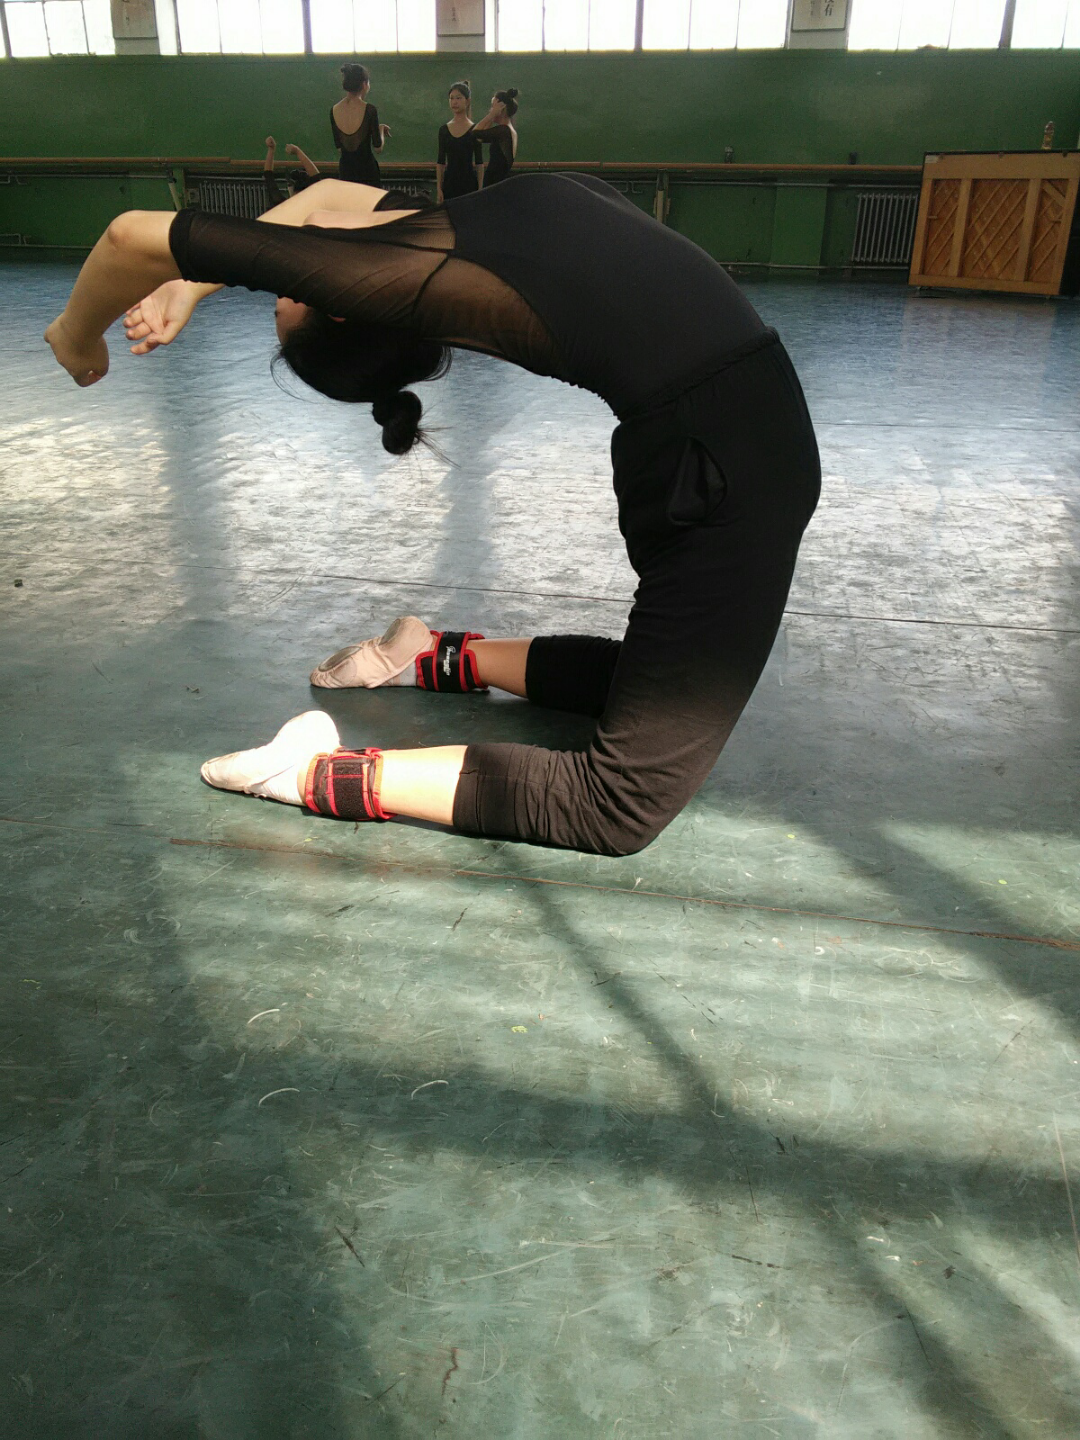 舞蹈艺考生冲刺练习劈叉压腿高难度动作 有的手臂拧成了麻花状